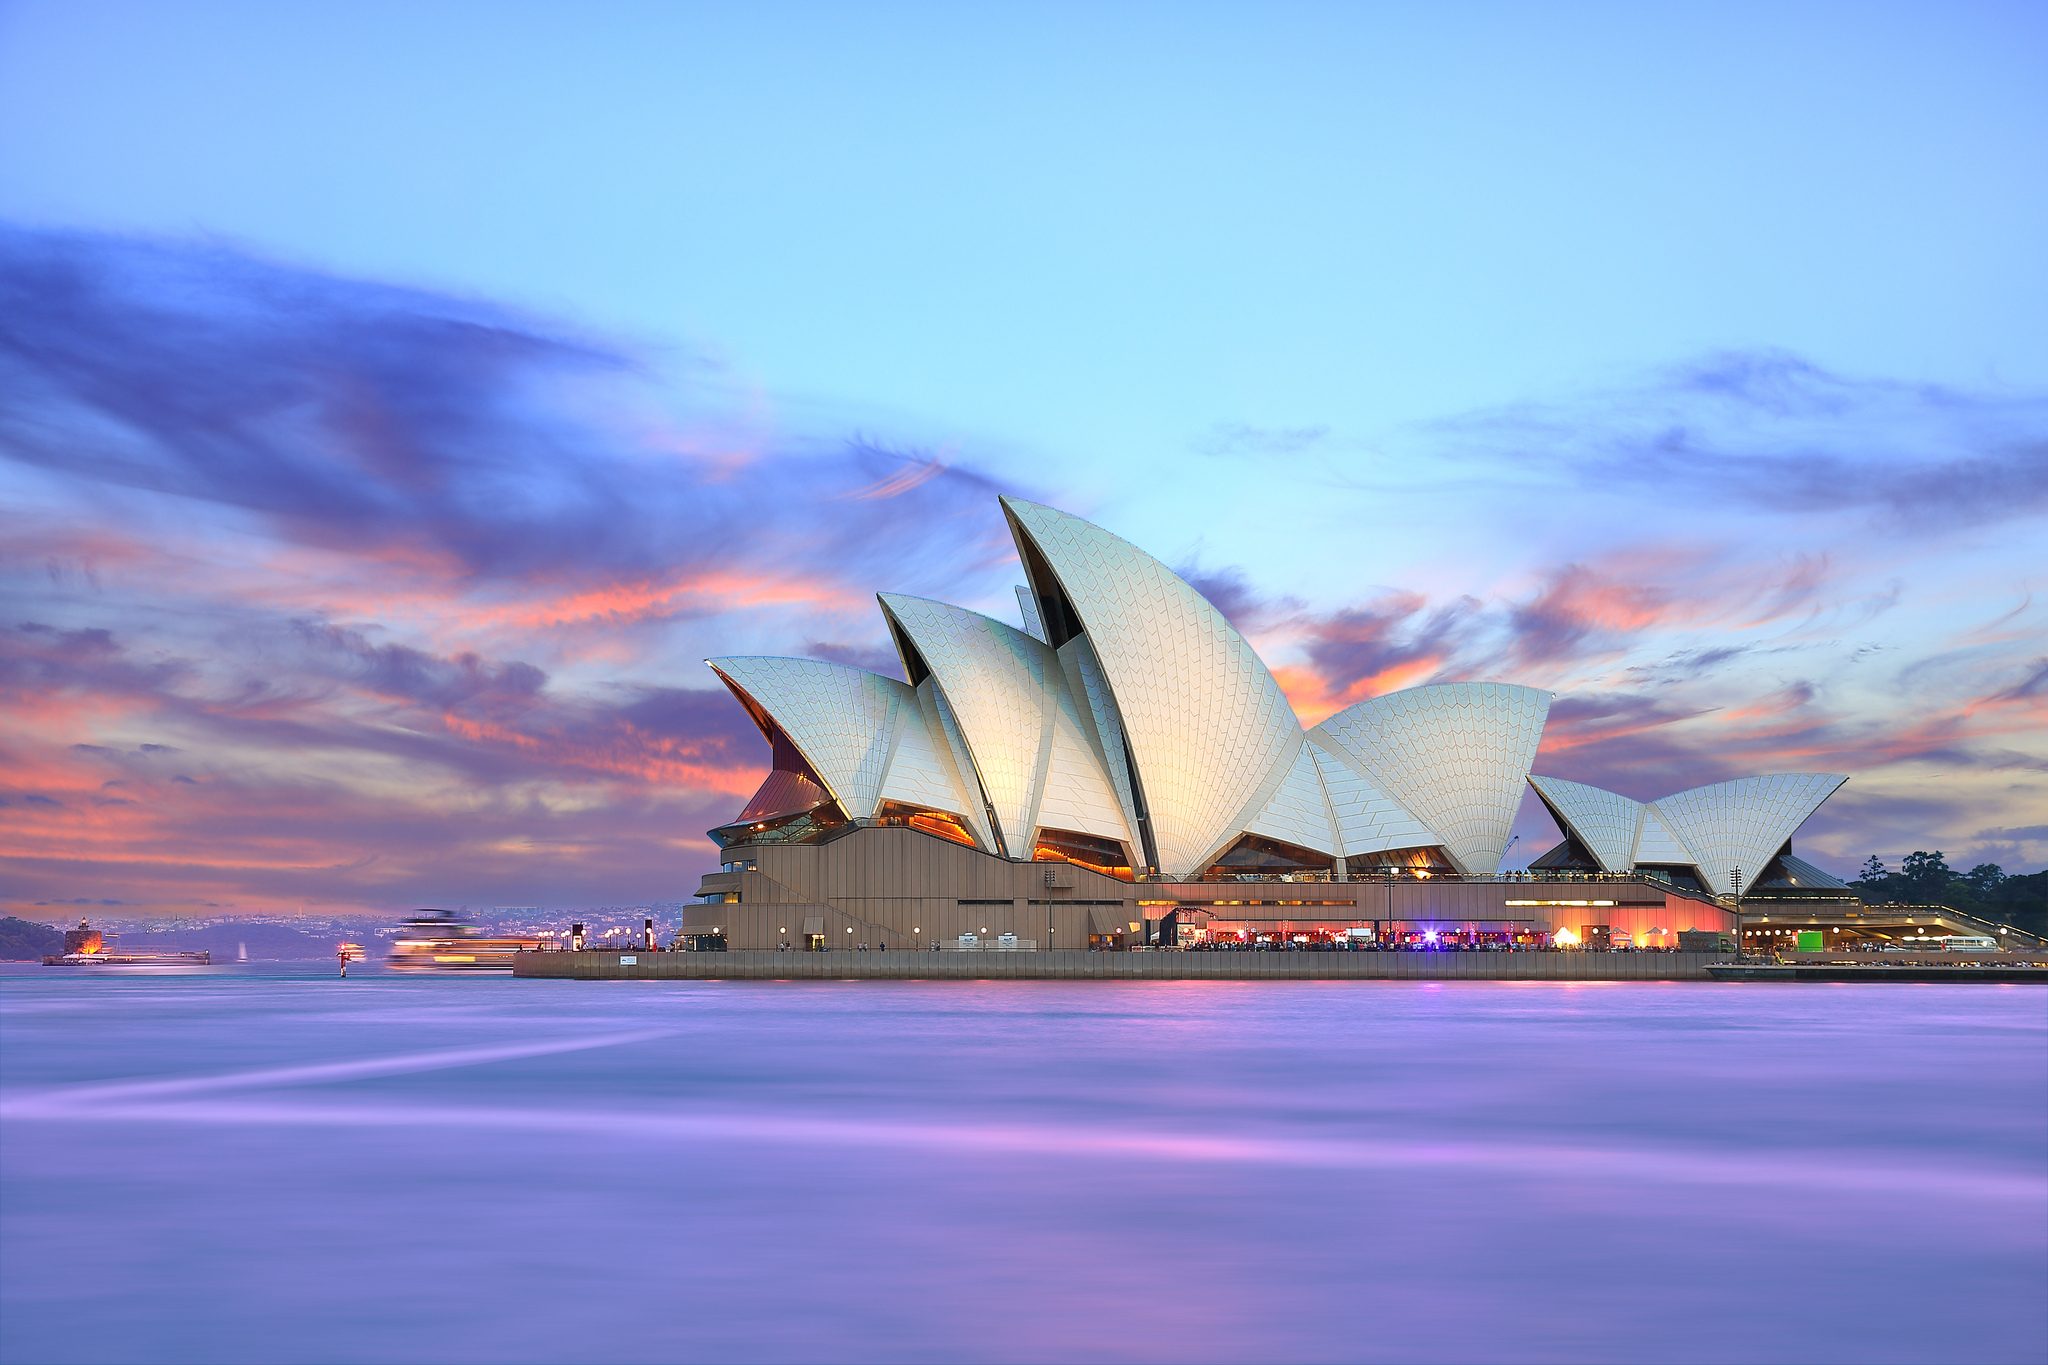 Sydney australia. Австралийский Союз Сидней. Сиднейский оперный театр. Сиднейский оперный театр Австралия закат. Северный Сидней Австралия.